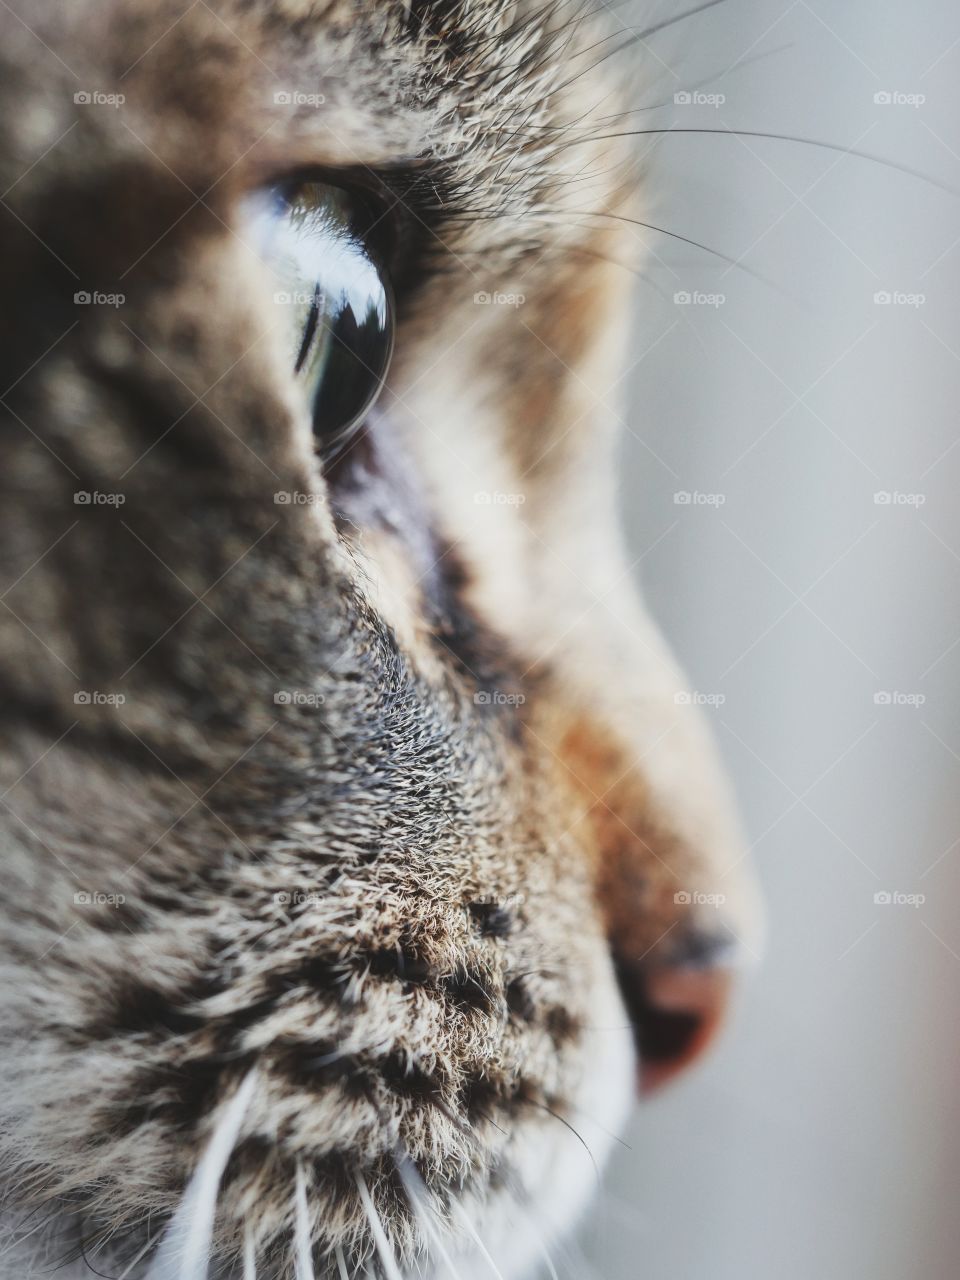 Close up portrait of cat